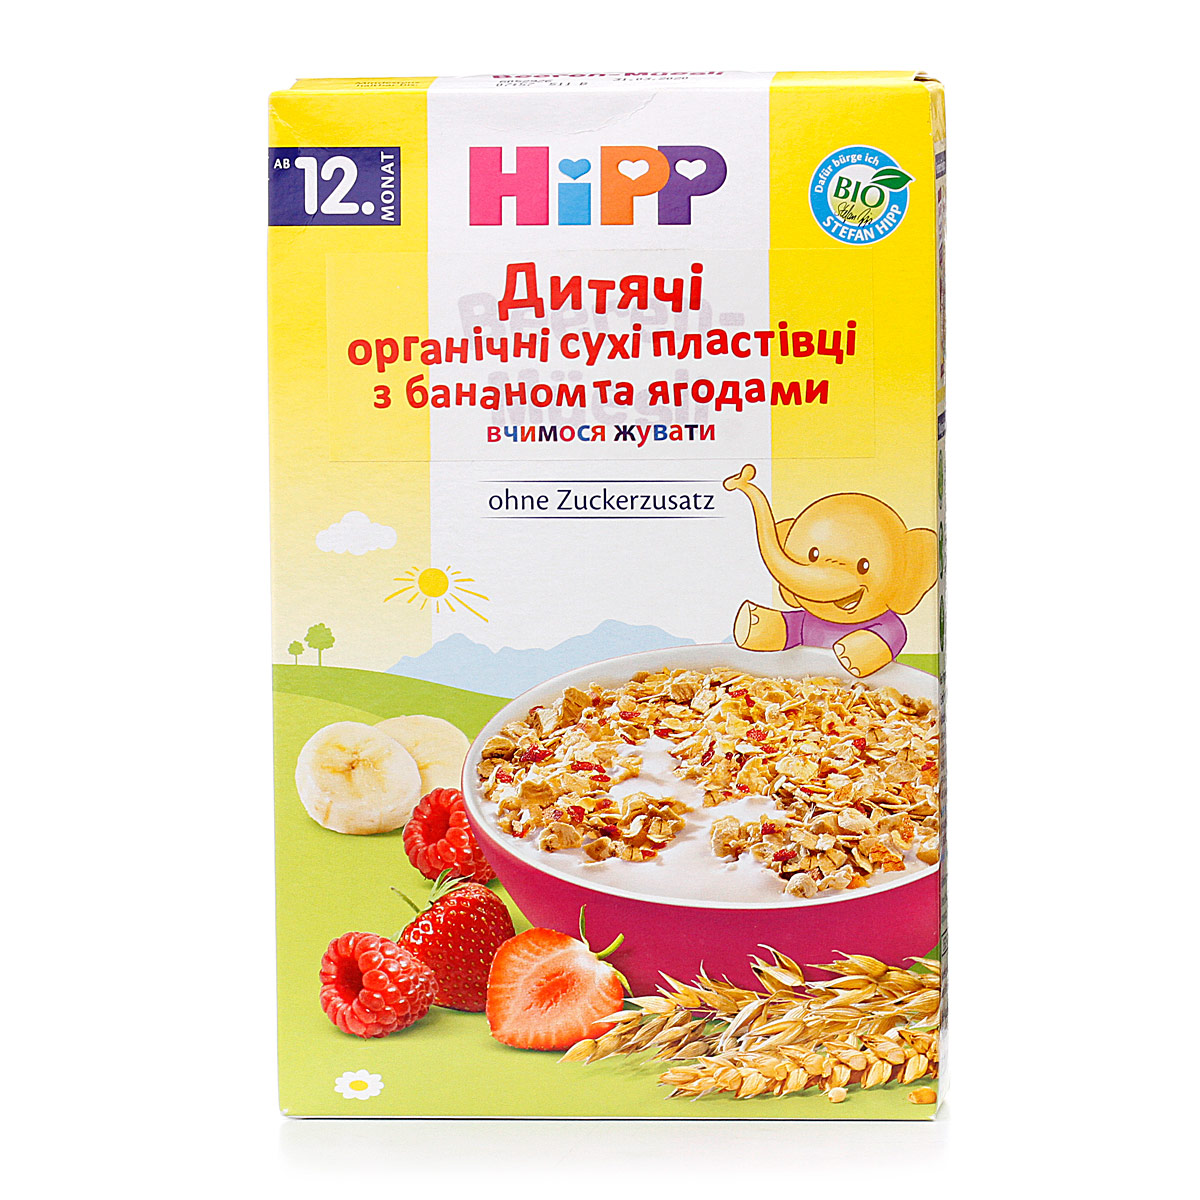 Дитячі органічні сухі пластівці HiPP з бананом та ягодами - фото 6 | Интернет-магазин Shop HiPP